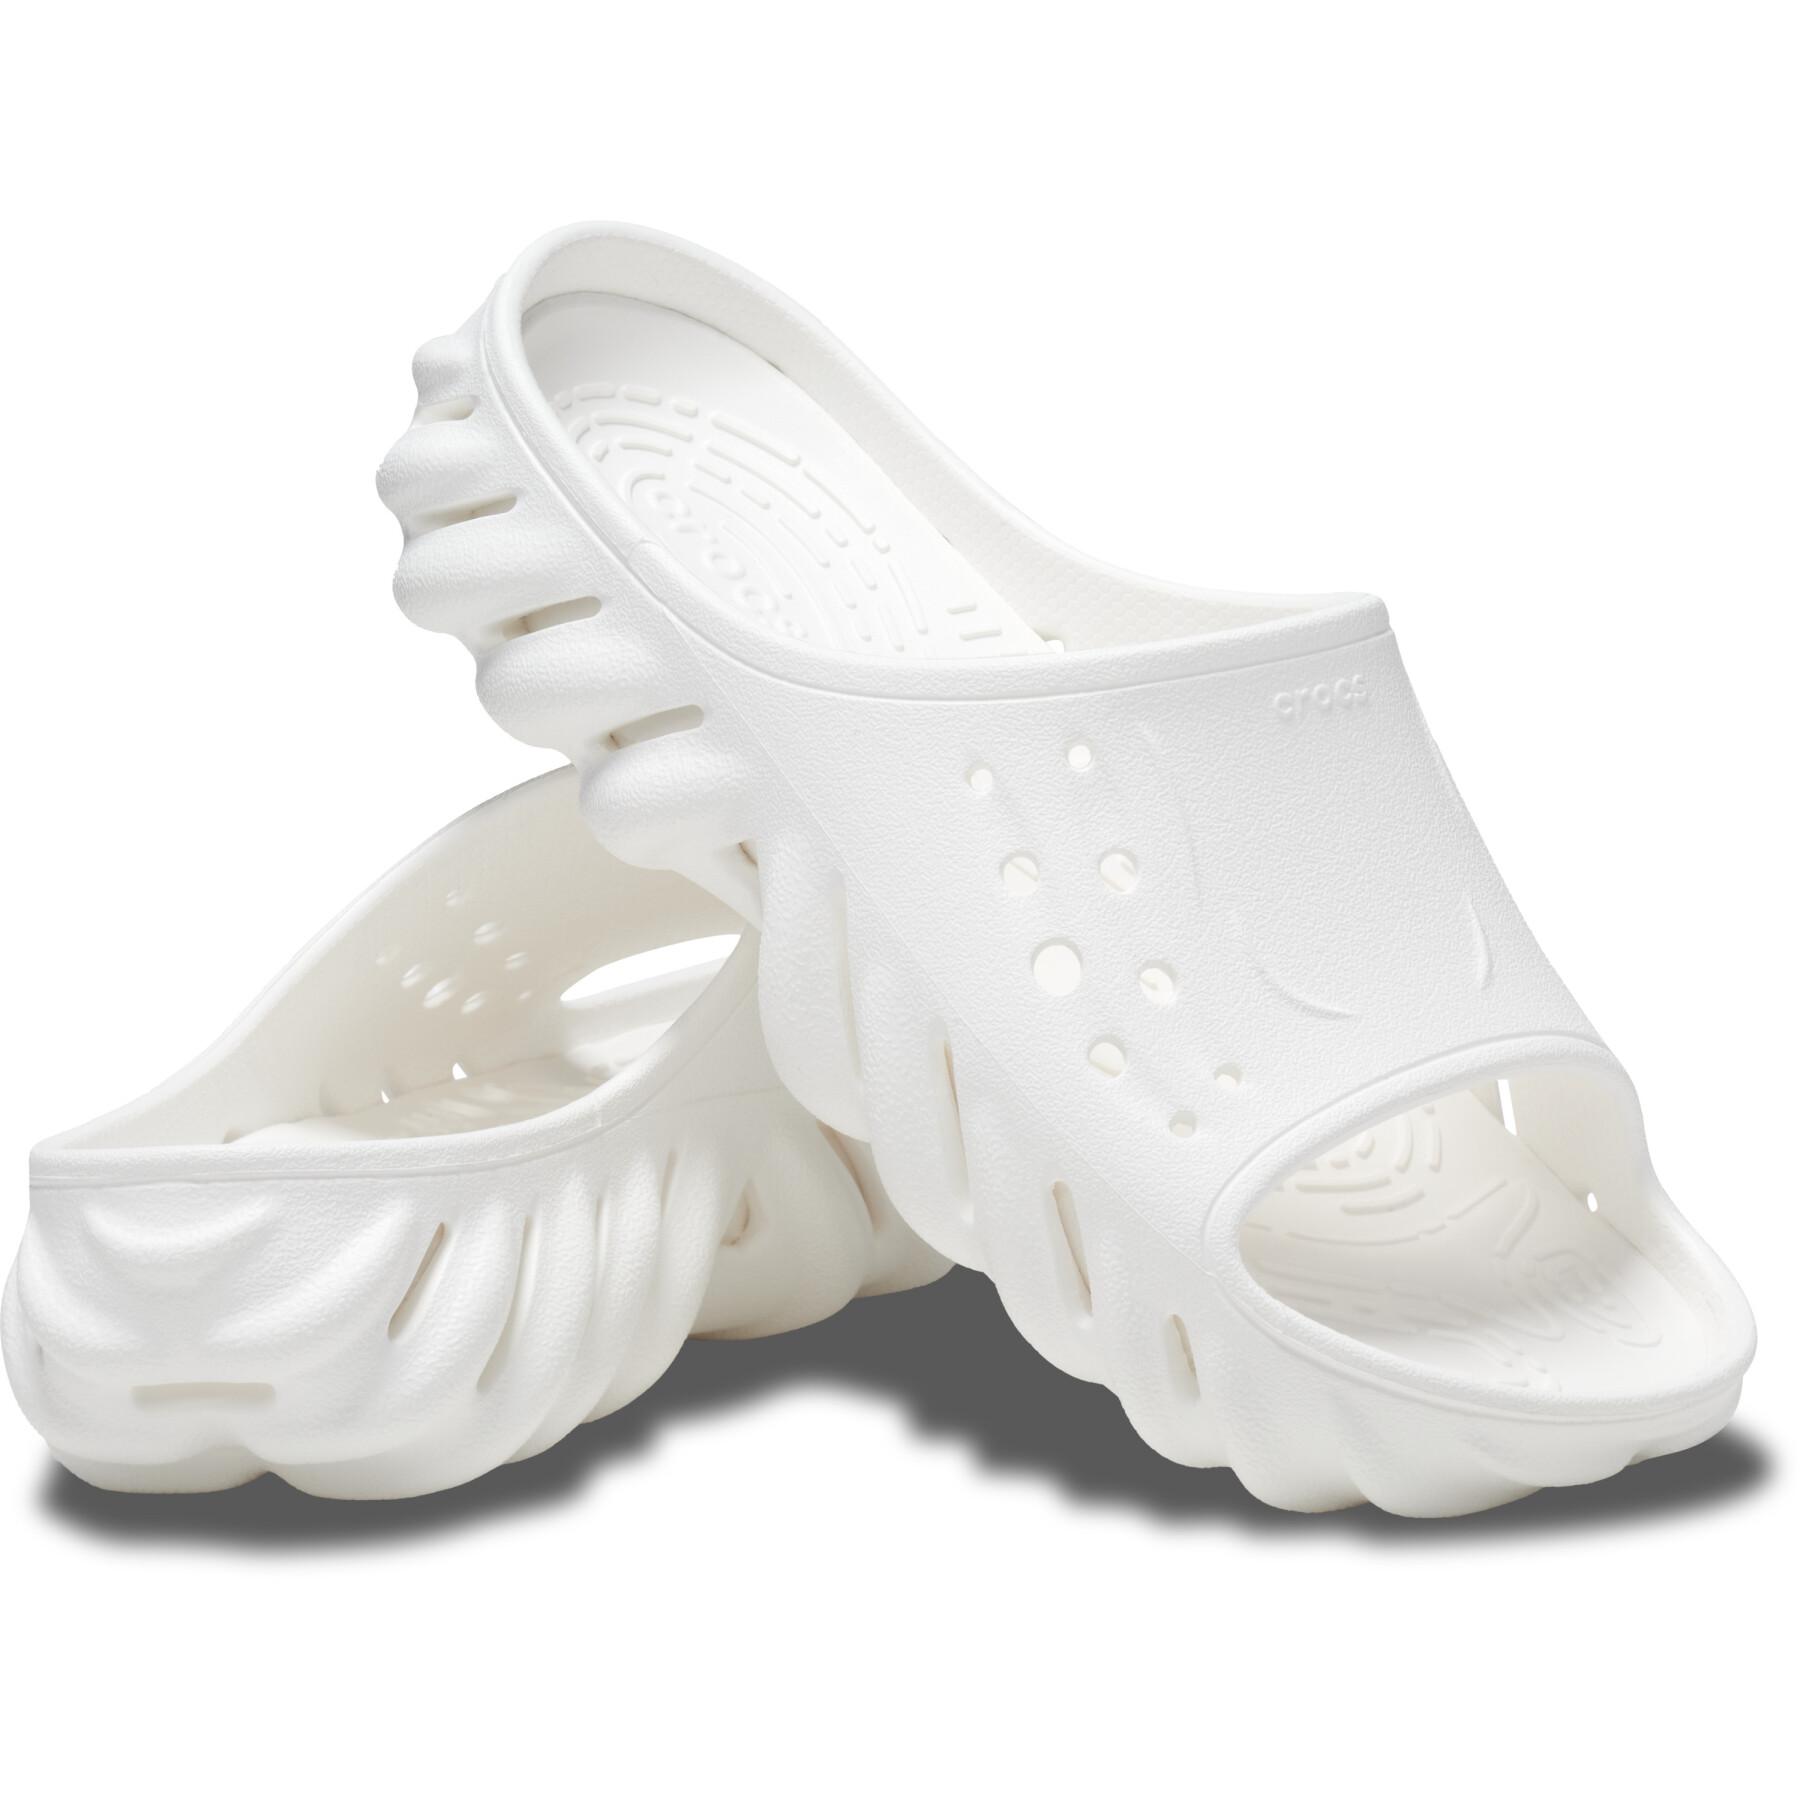 Sandals Crocs Echo